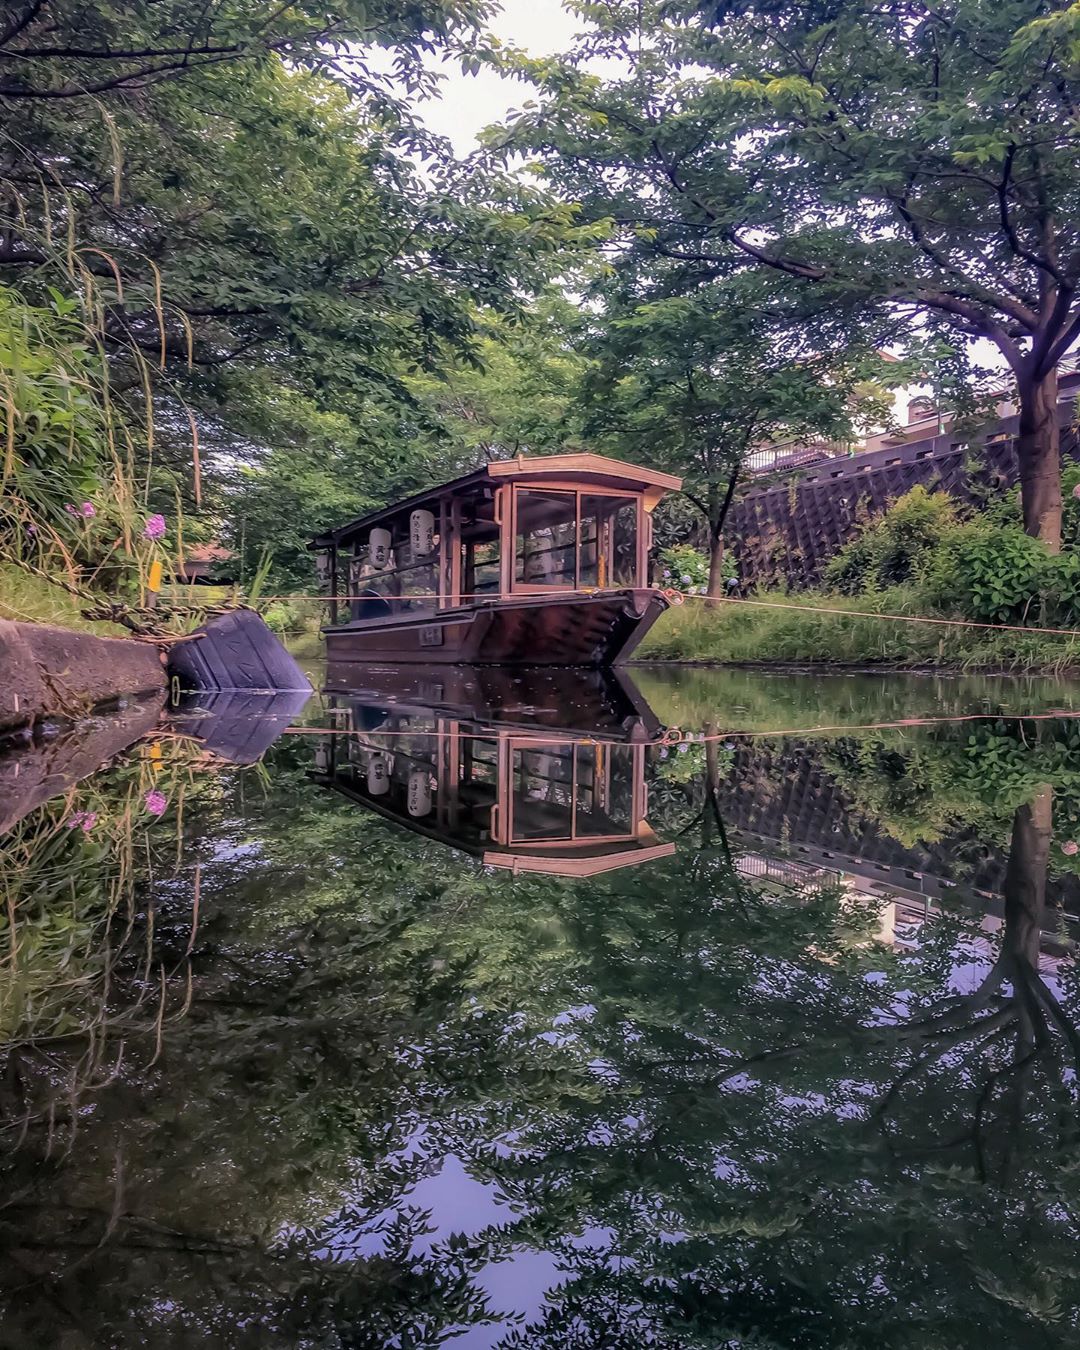 京都 伏見港公園:Kyoto Japan